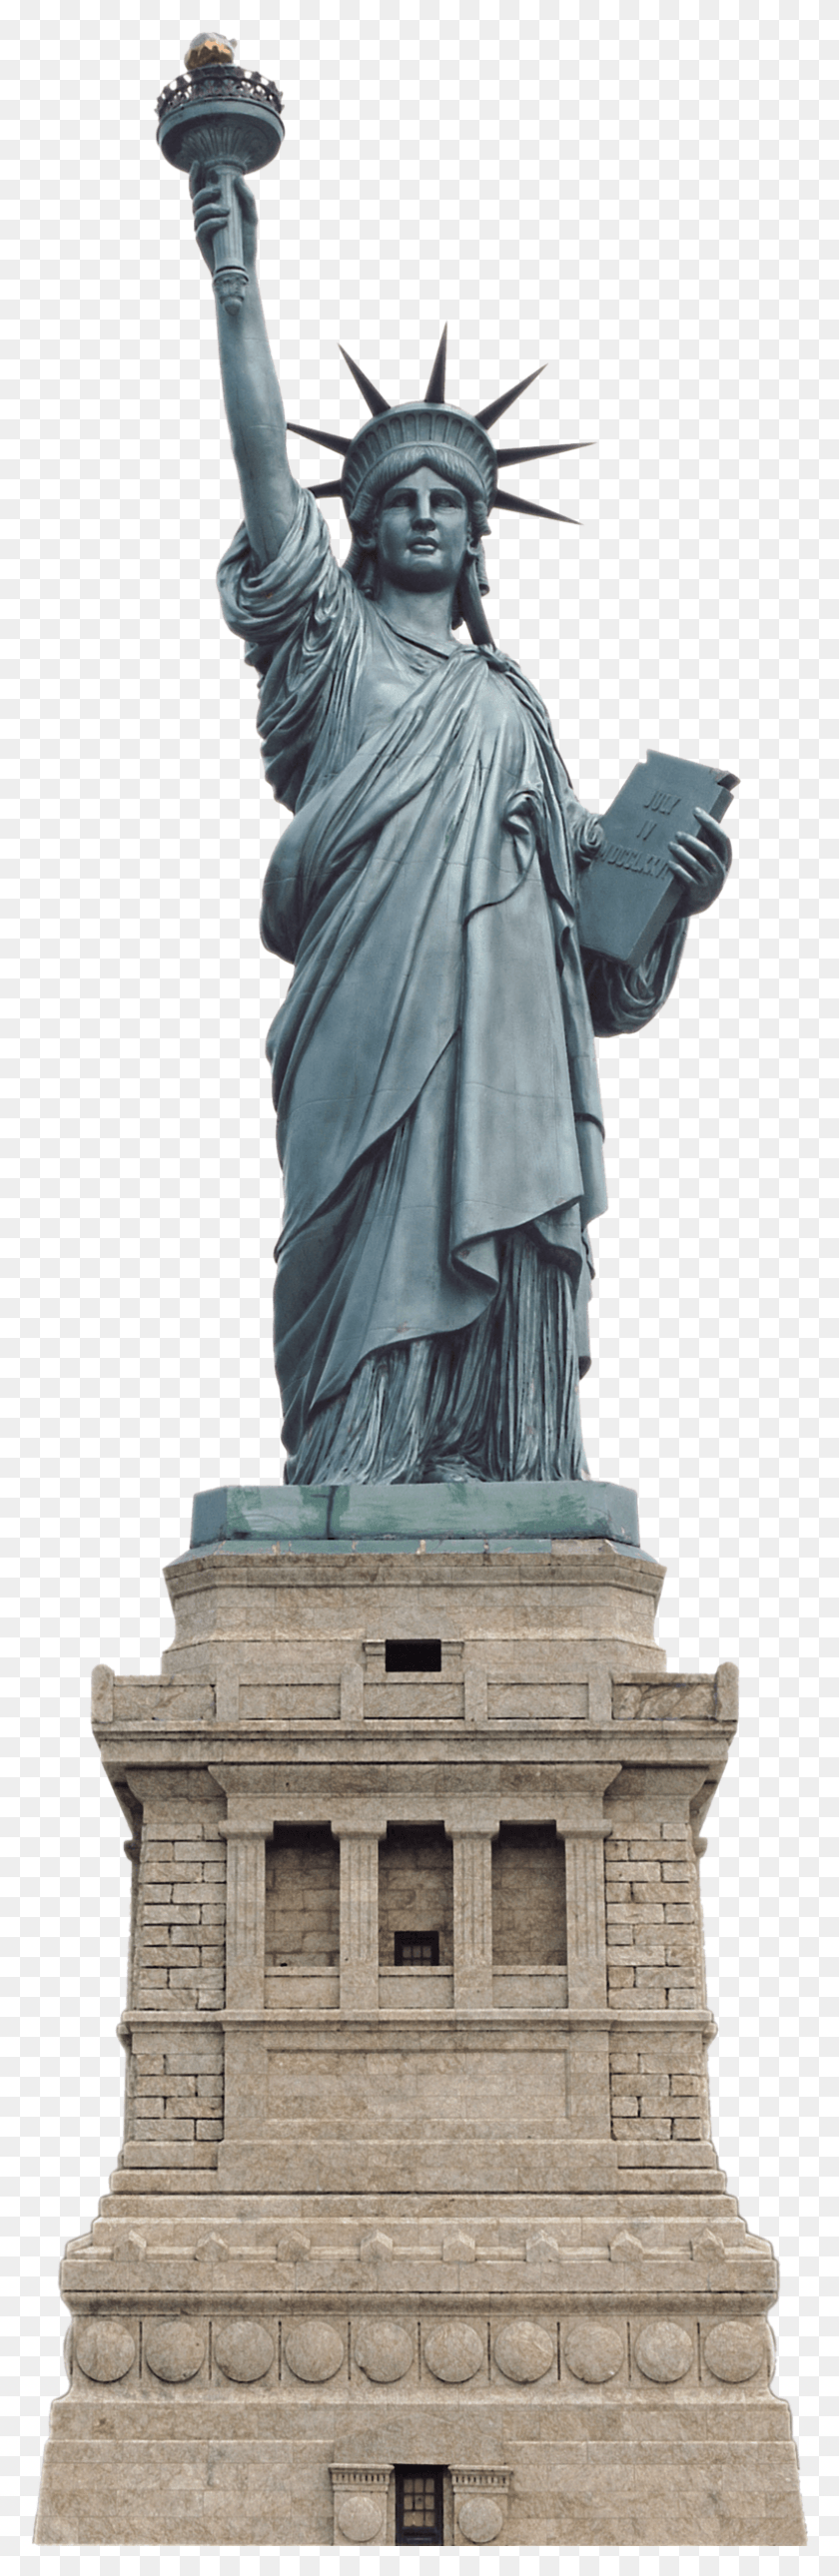 789x2550 La Estatua De La Libertad Png / Estatua De La Libertad Hd Png